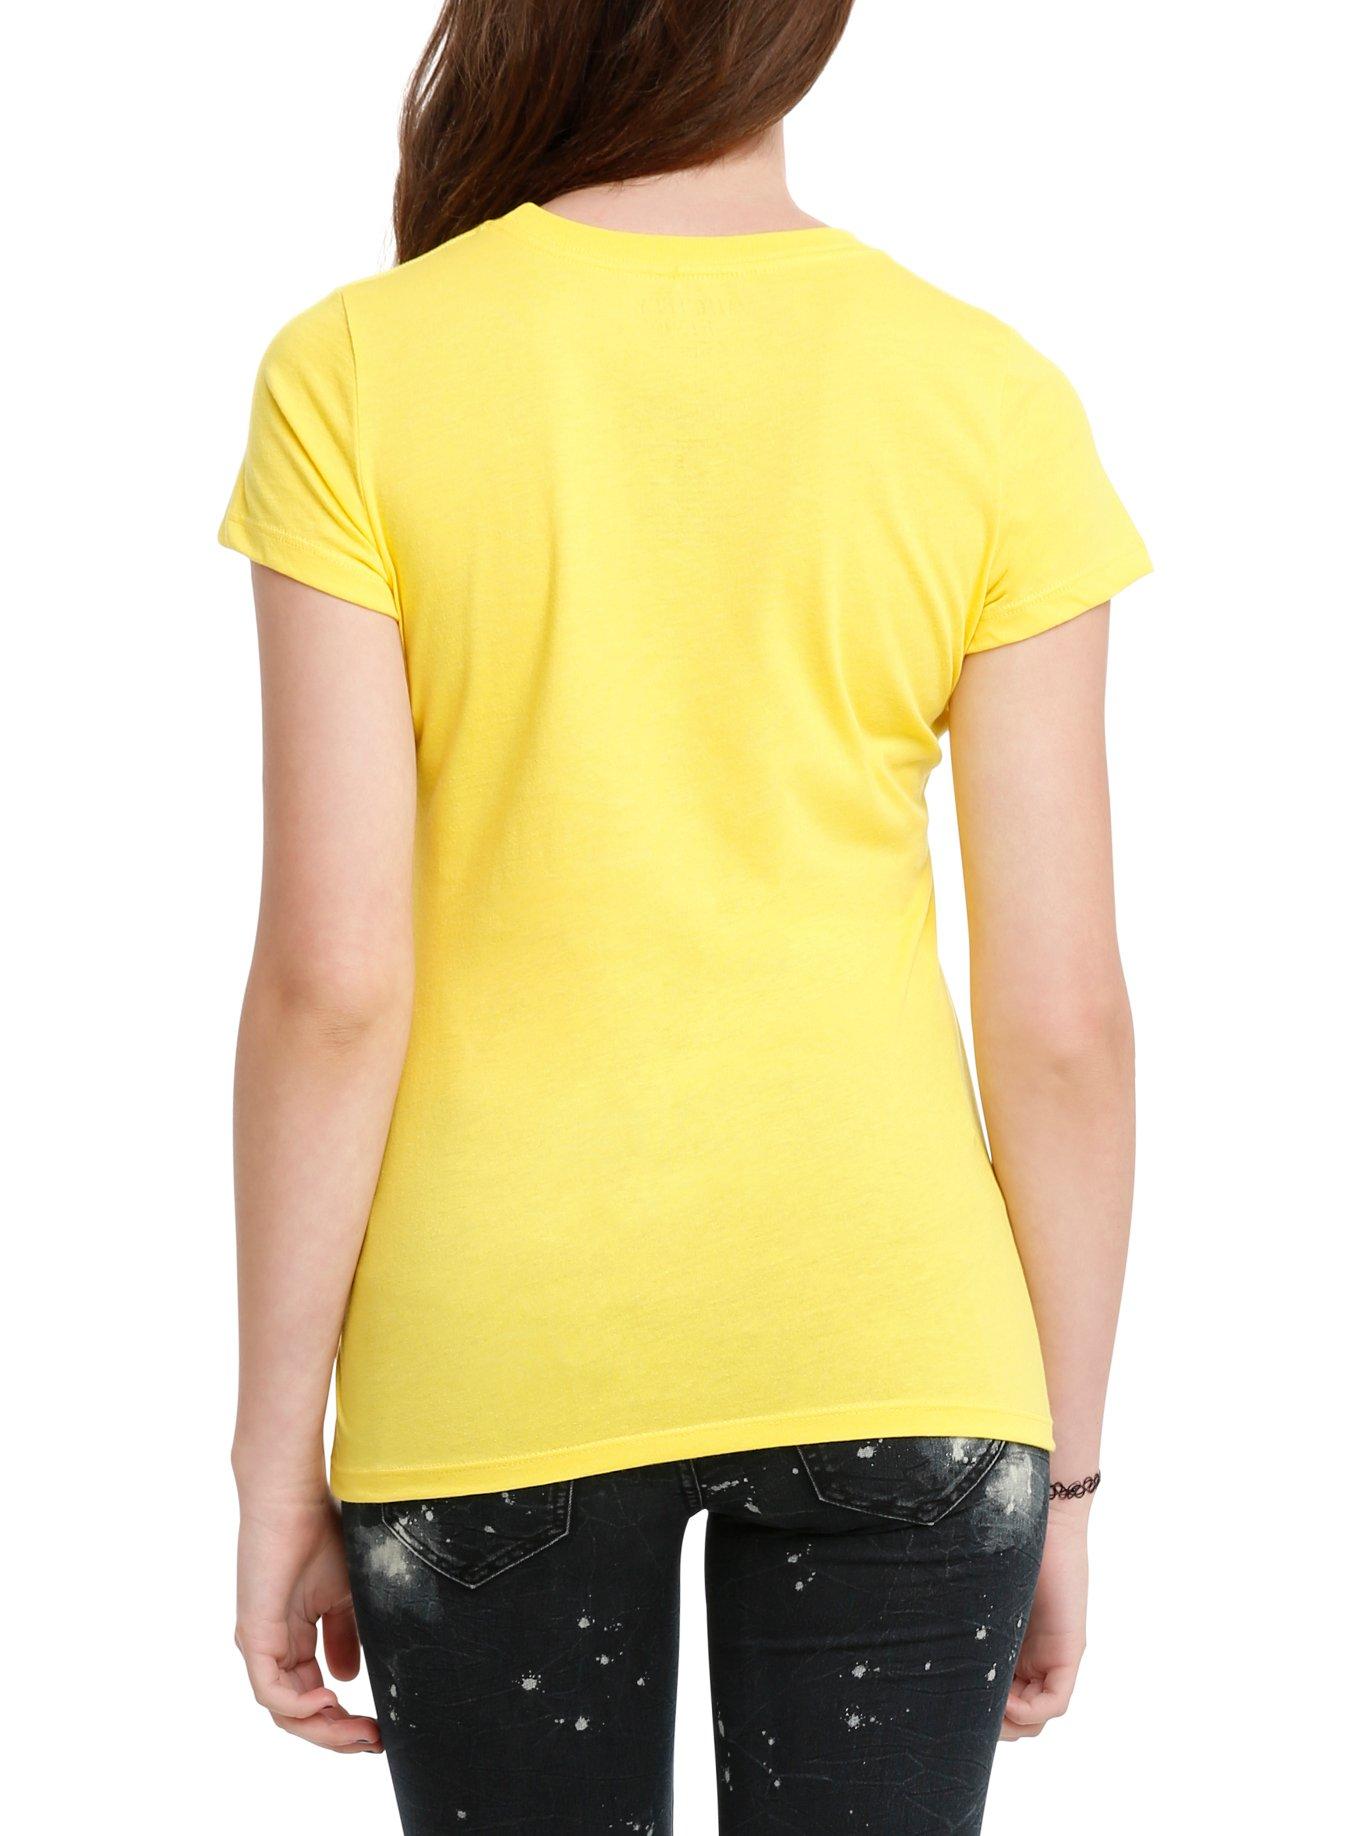 Mighty Morphin Power Rangers Yellow Ranger Cosplay Girls  T-Shirt, , alternate